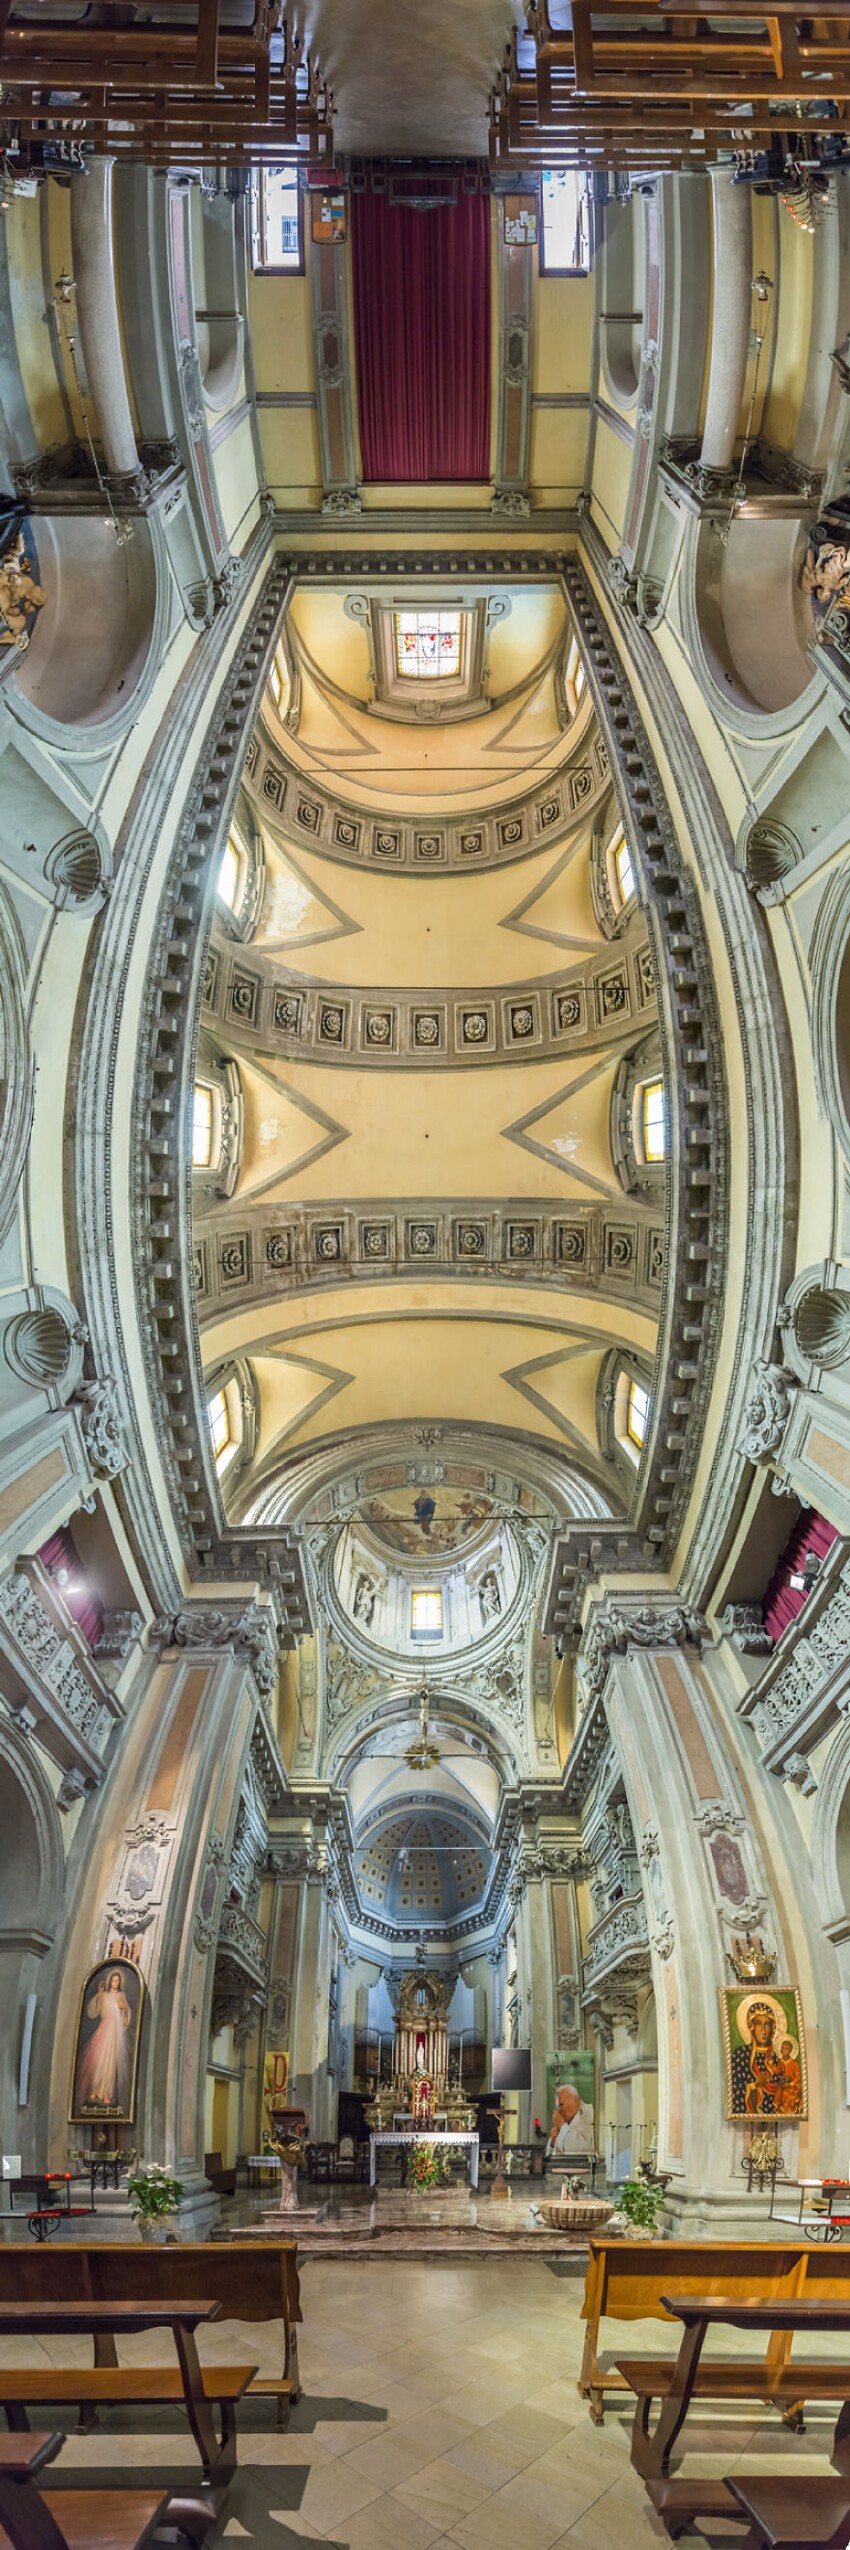 Церковь Святой Марии, Милан, Италия